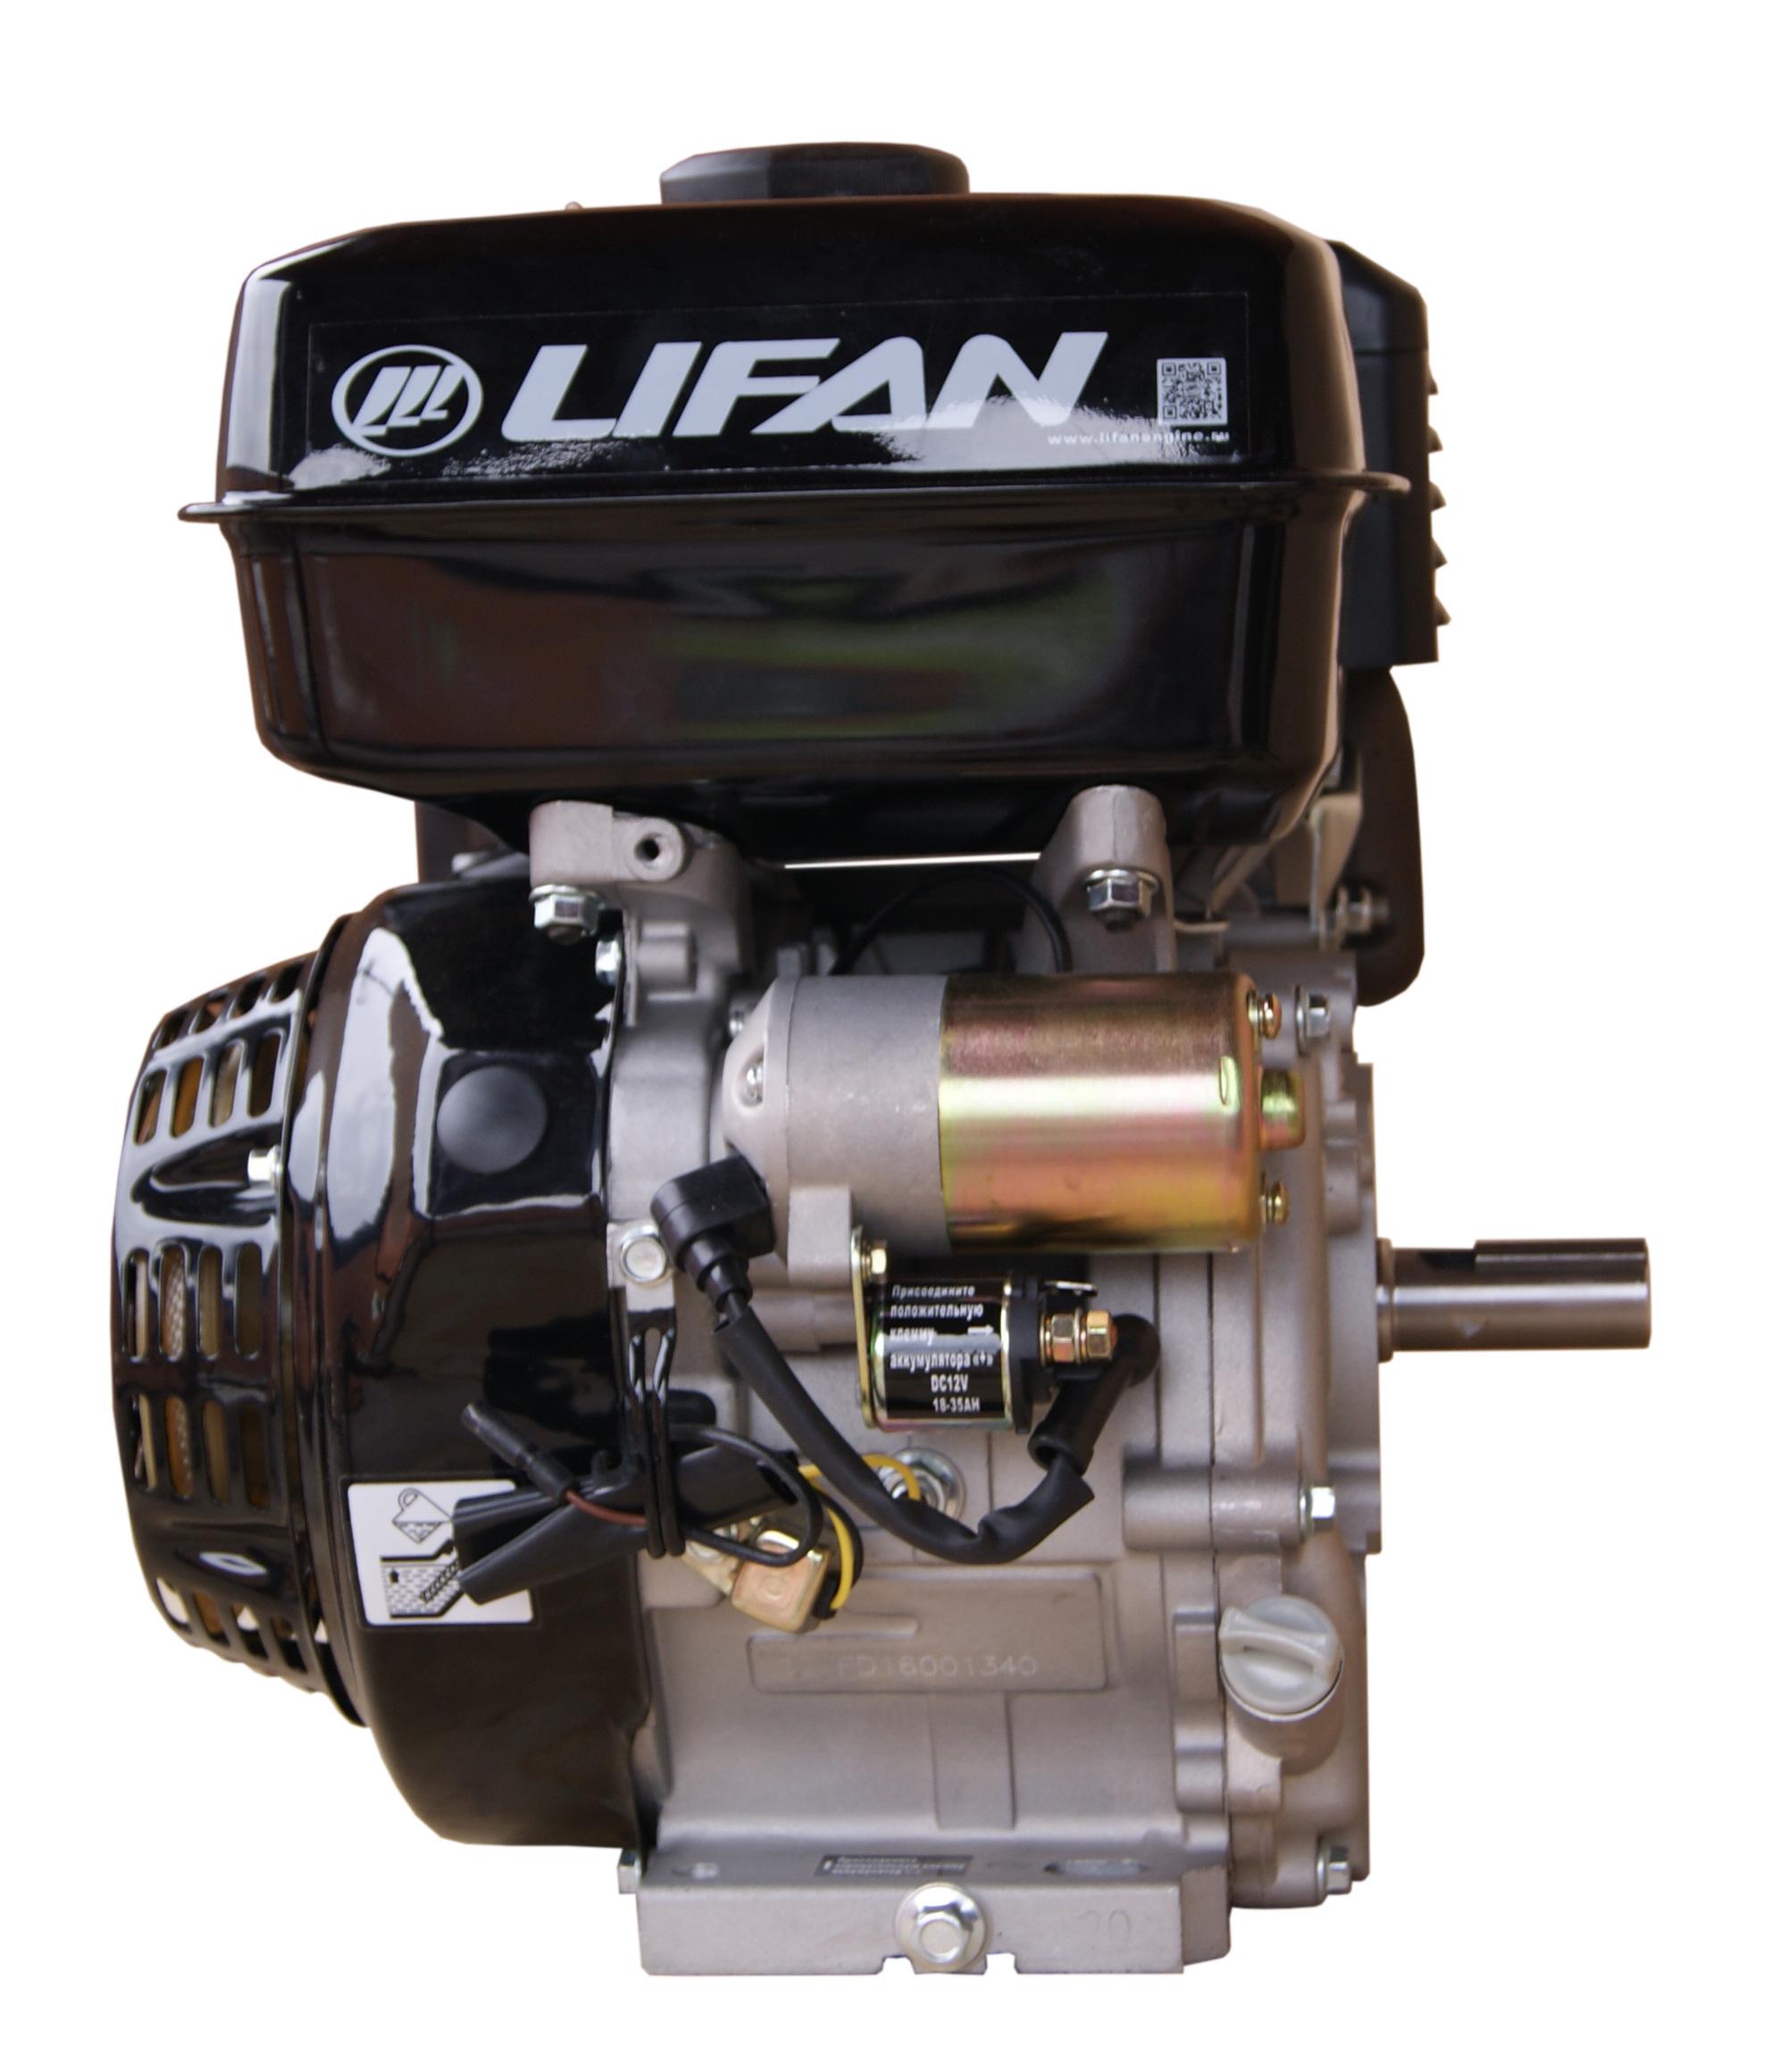 Купить двигатель лифан 9. Двигатель Lifan 177fd. Двигатель Lifan 9 л.с. 177fd. Лифан 177fd. Двигатель Lifan 177fd с электростартером.